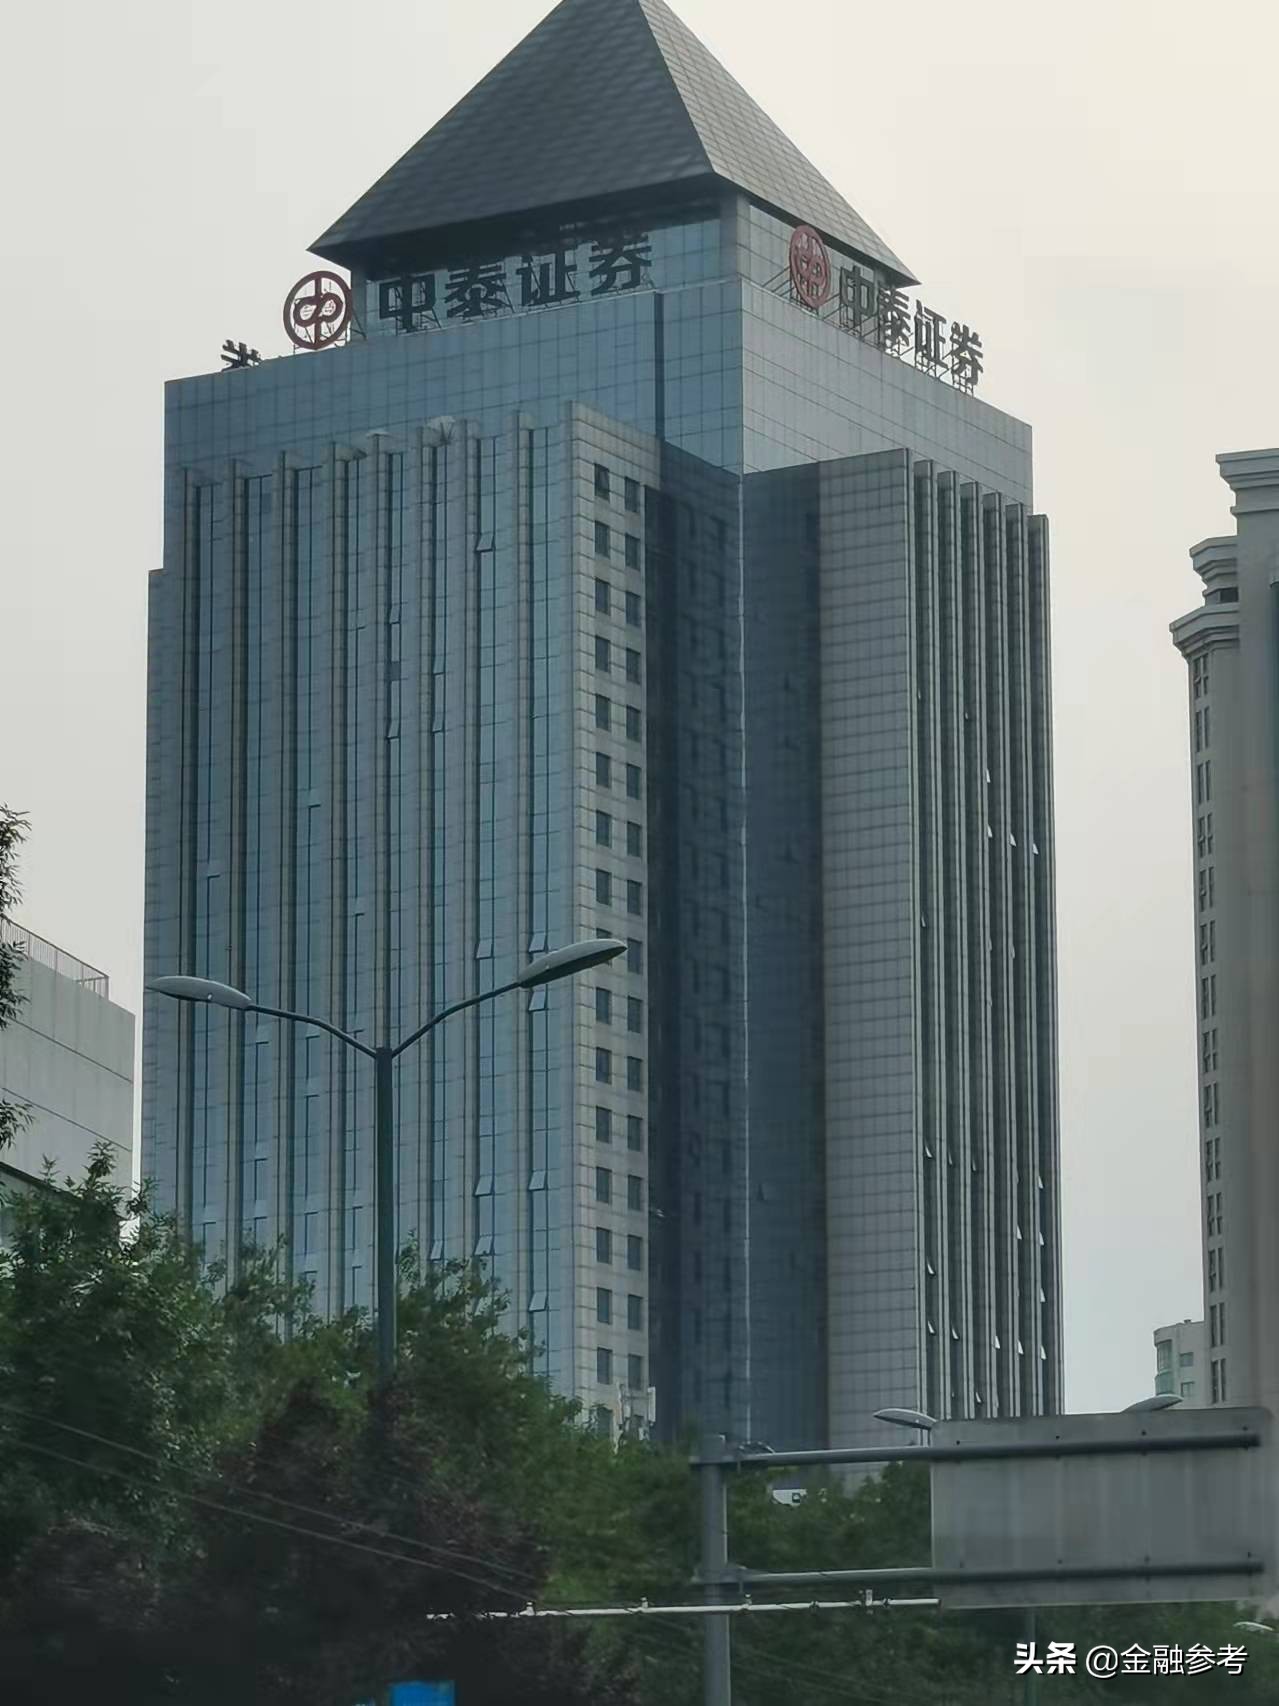 中泰证券拟斥资不超过17.38亿元置业云鼎大厦 总部搬至济南高新区传言或将坐实